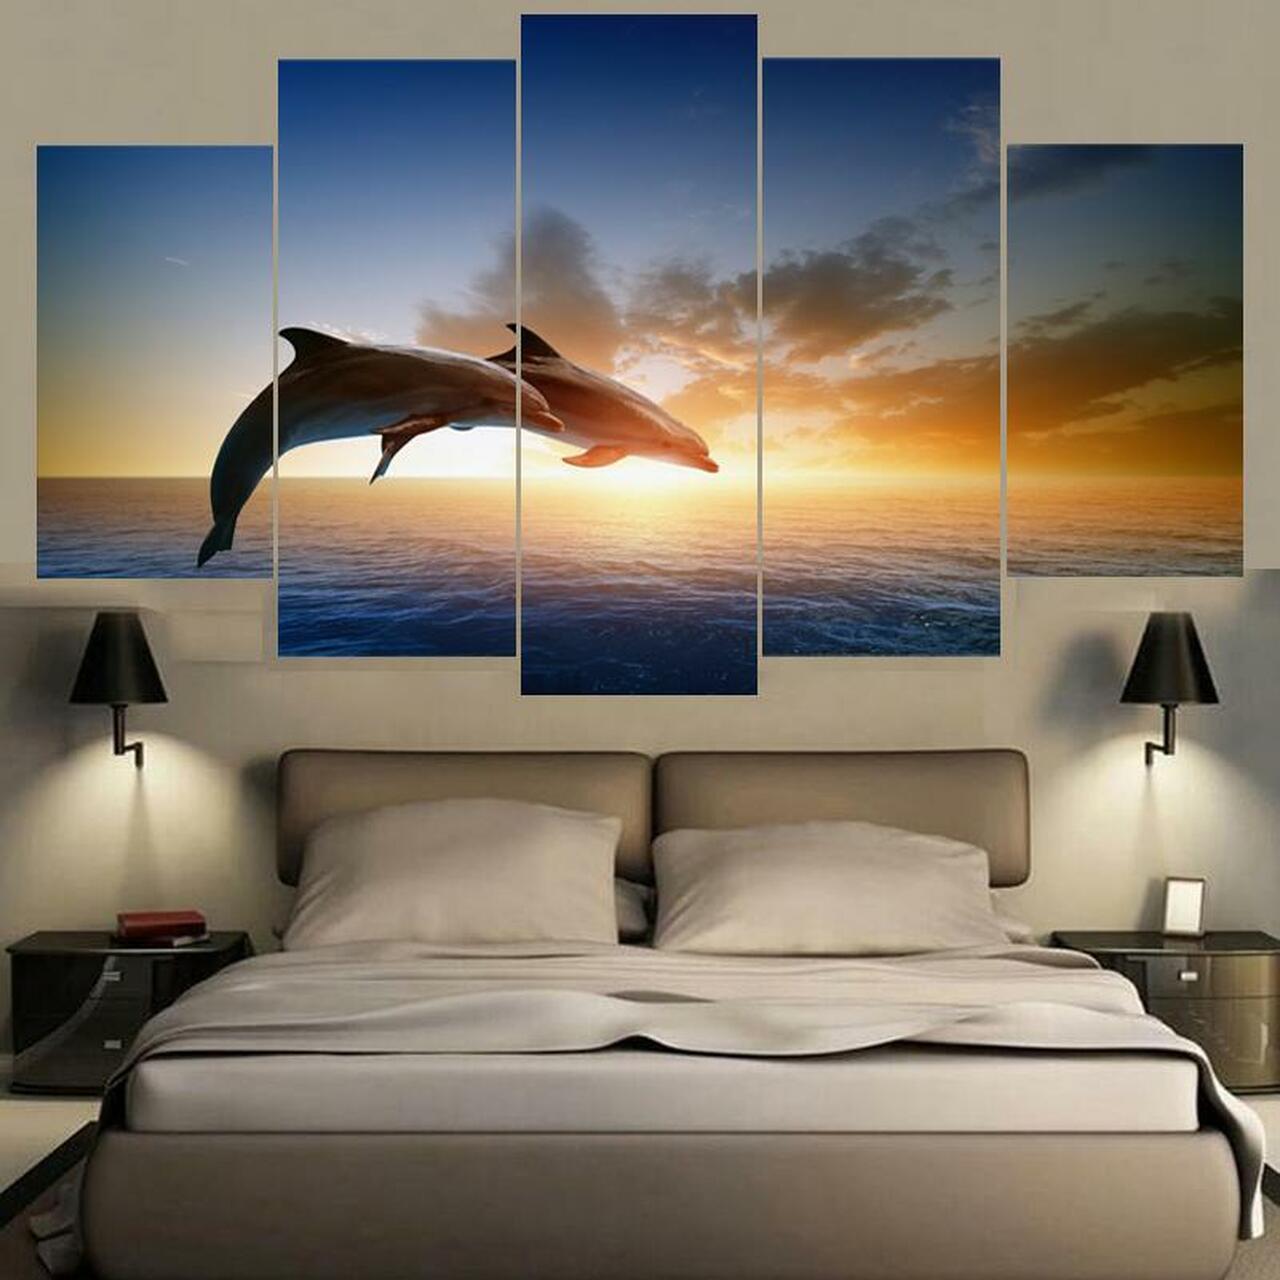 two dolphins 5 pices peinture sur toile impression sur toile toile art pour la dcoration intrieuredyfho